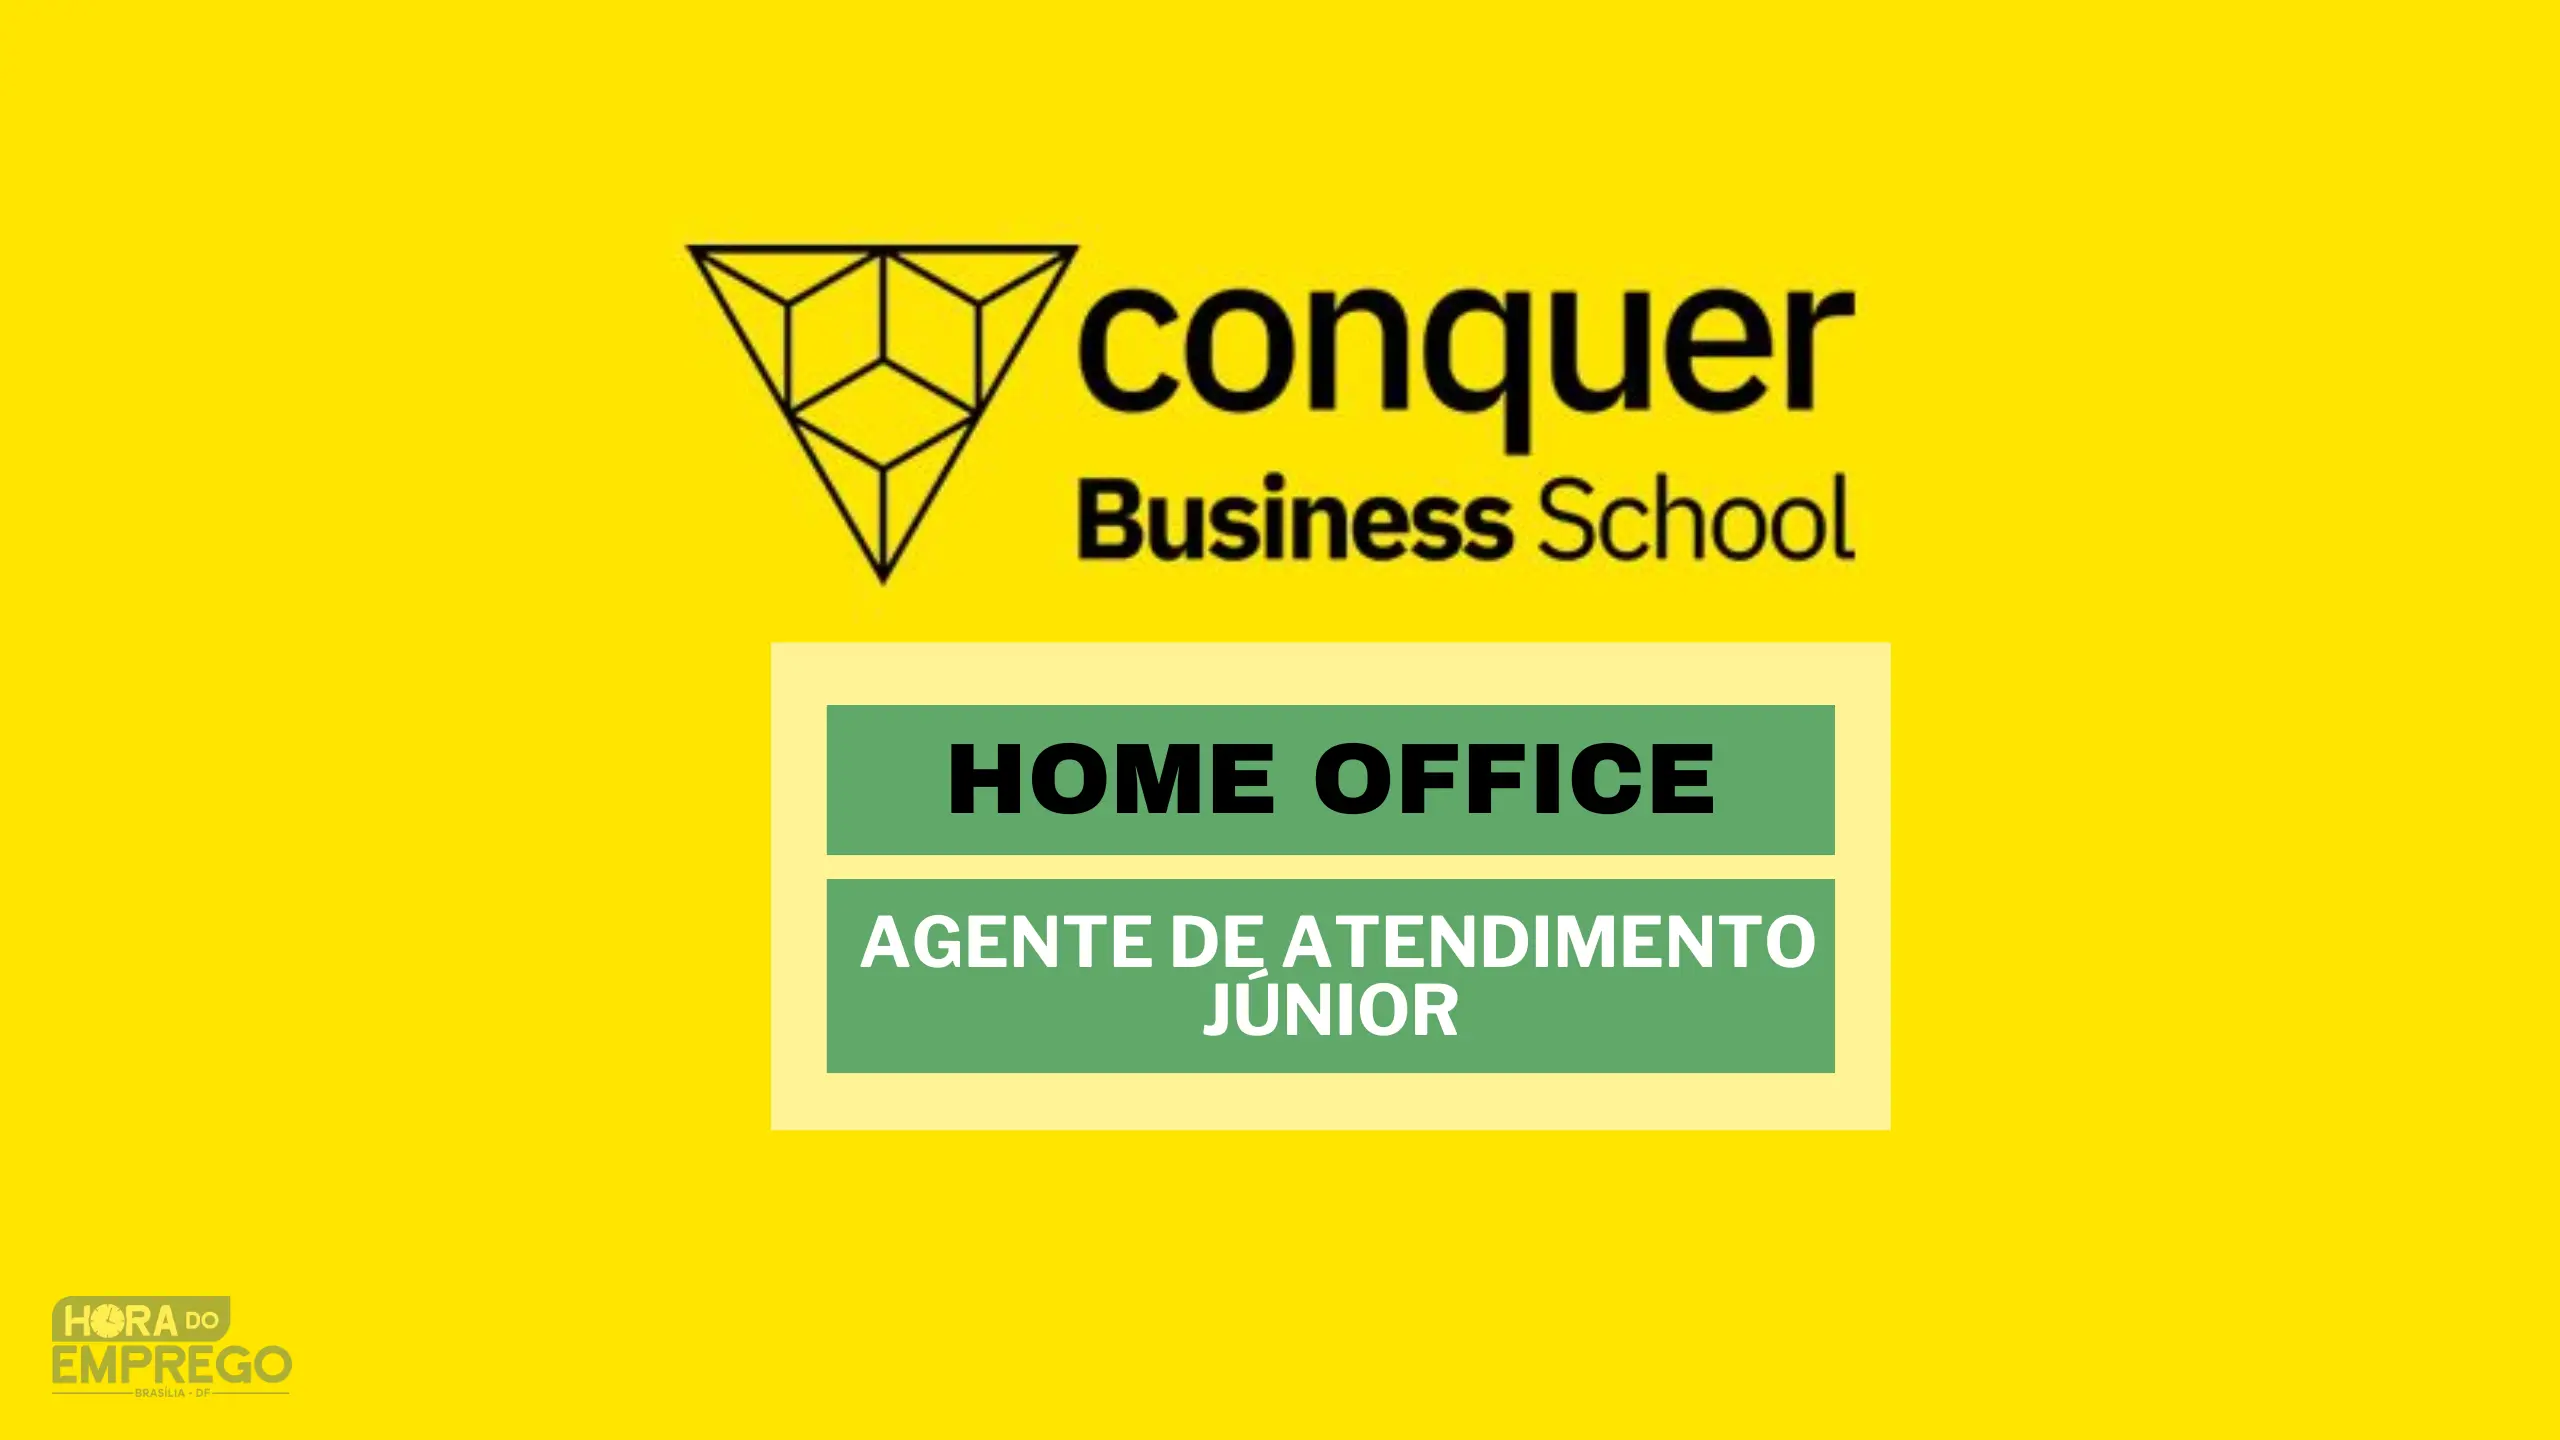 Trabalhe diretamente de Casa: Conquer Business School abre vagas HOME OFFICE para Agente de Atendimento Júnior